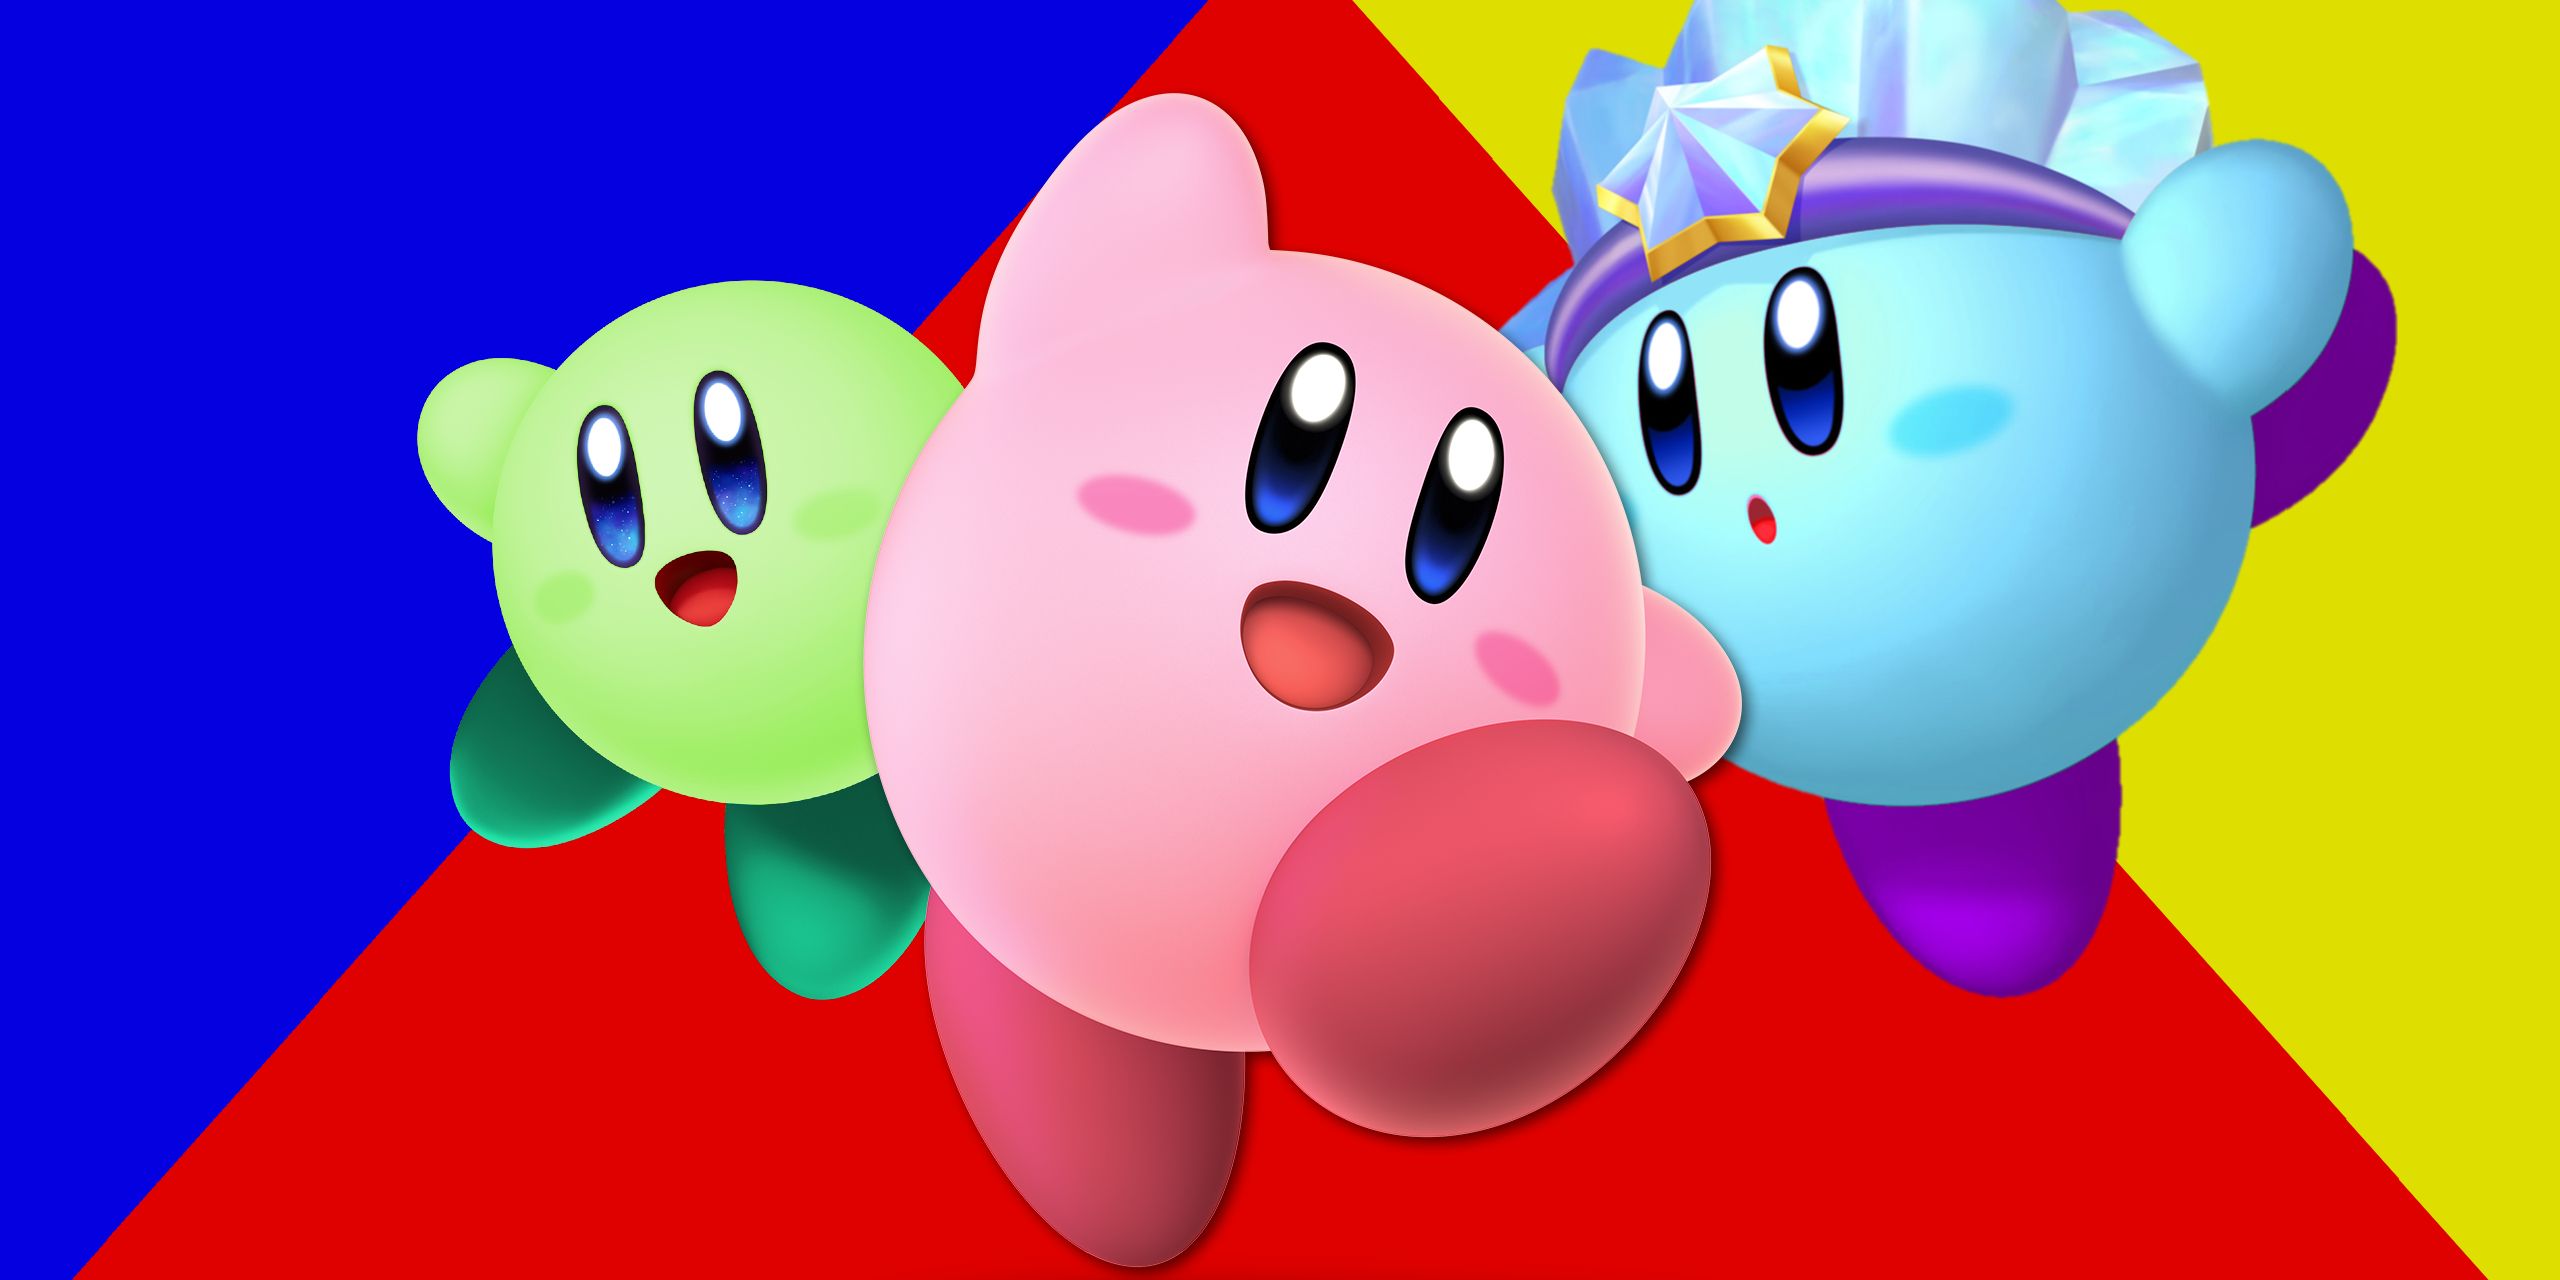 El nuevo juego de Kirby aparece en el sitio de Nintendo con una posible fuga accidental